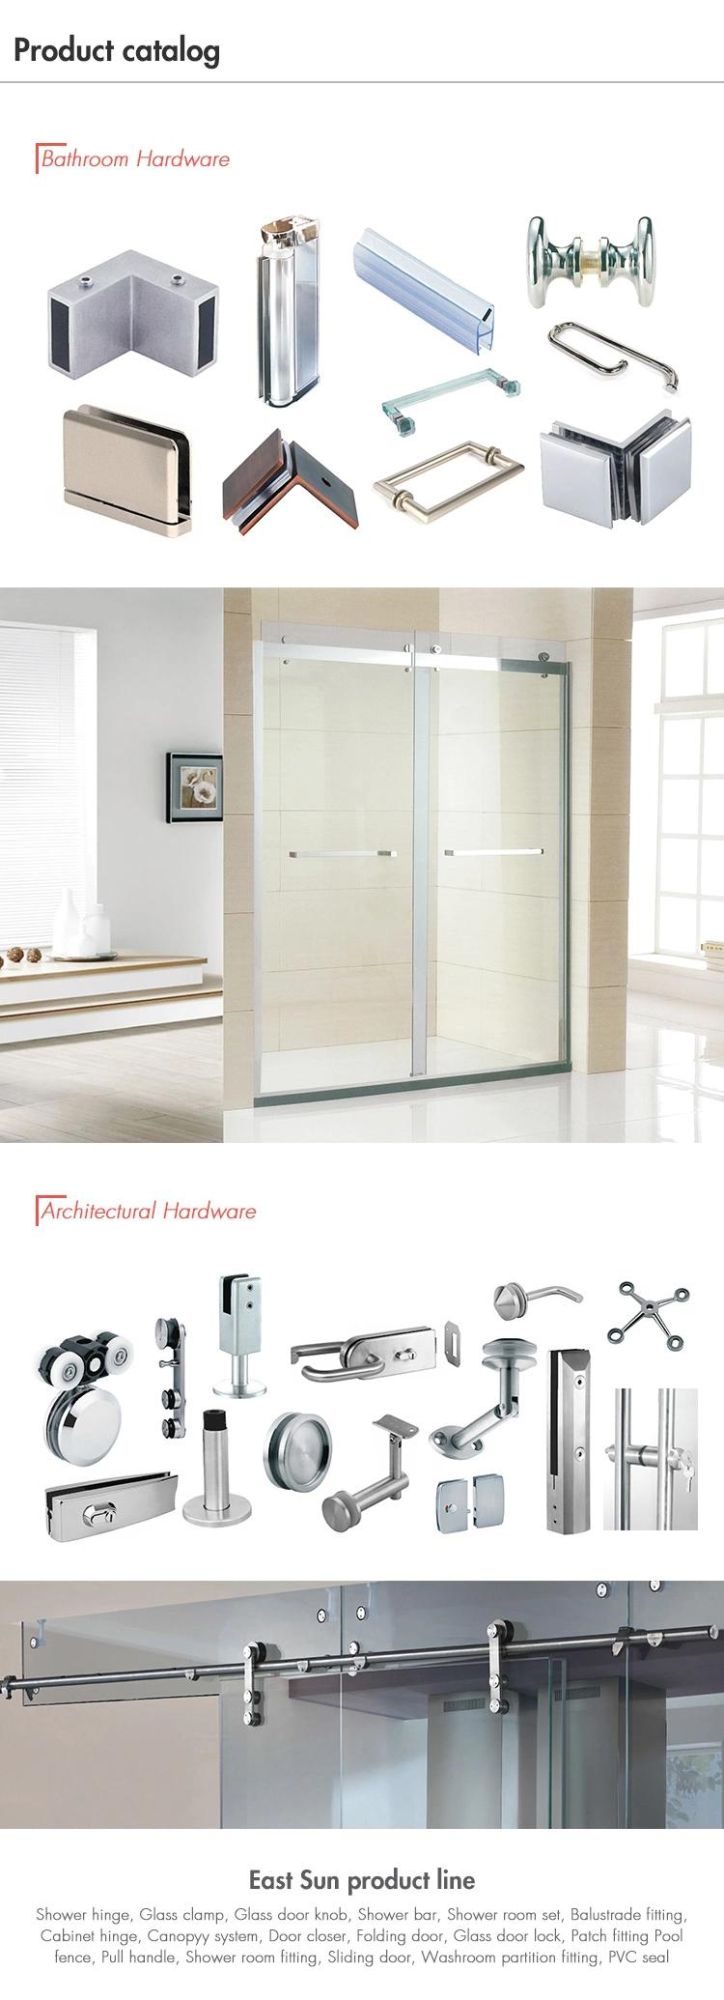 Factory Door Hardware Accessories Stainless Steel Pull Handle Glass Door Handle (pH-067)